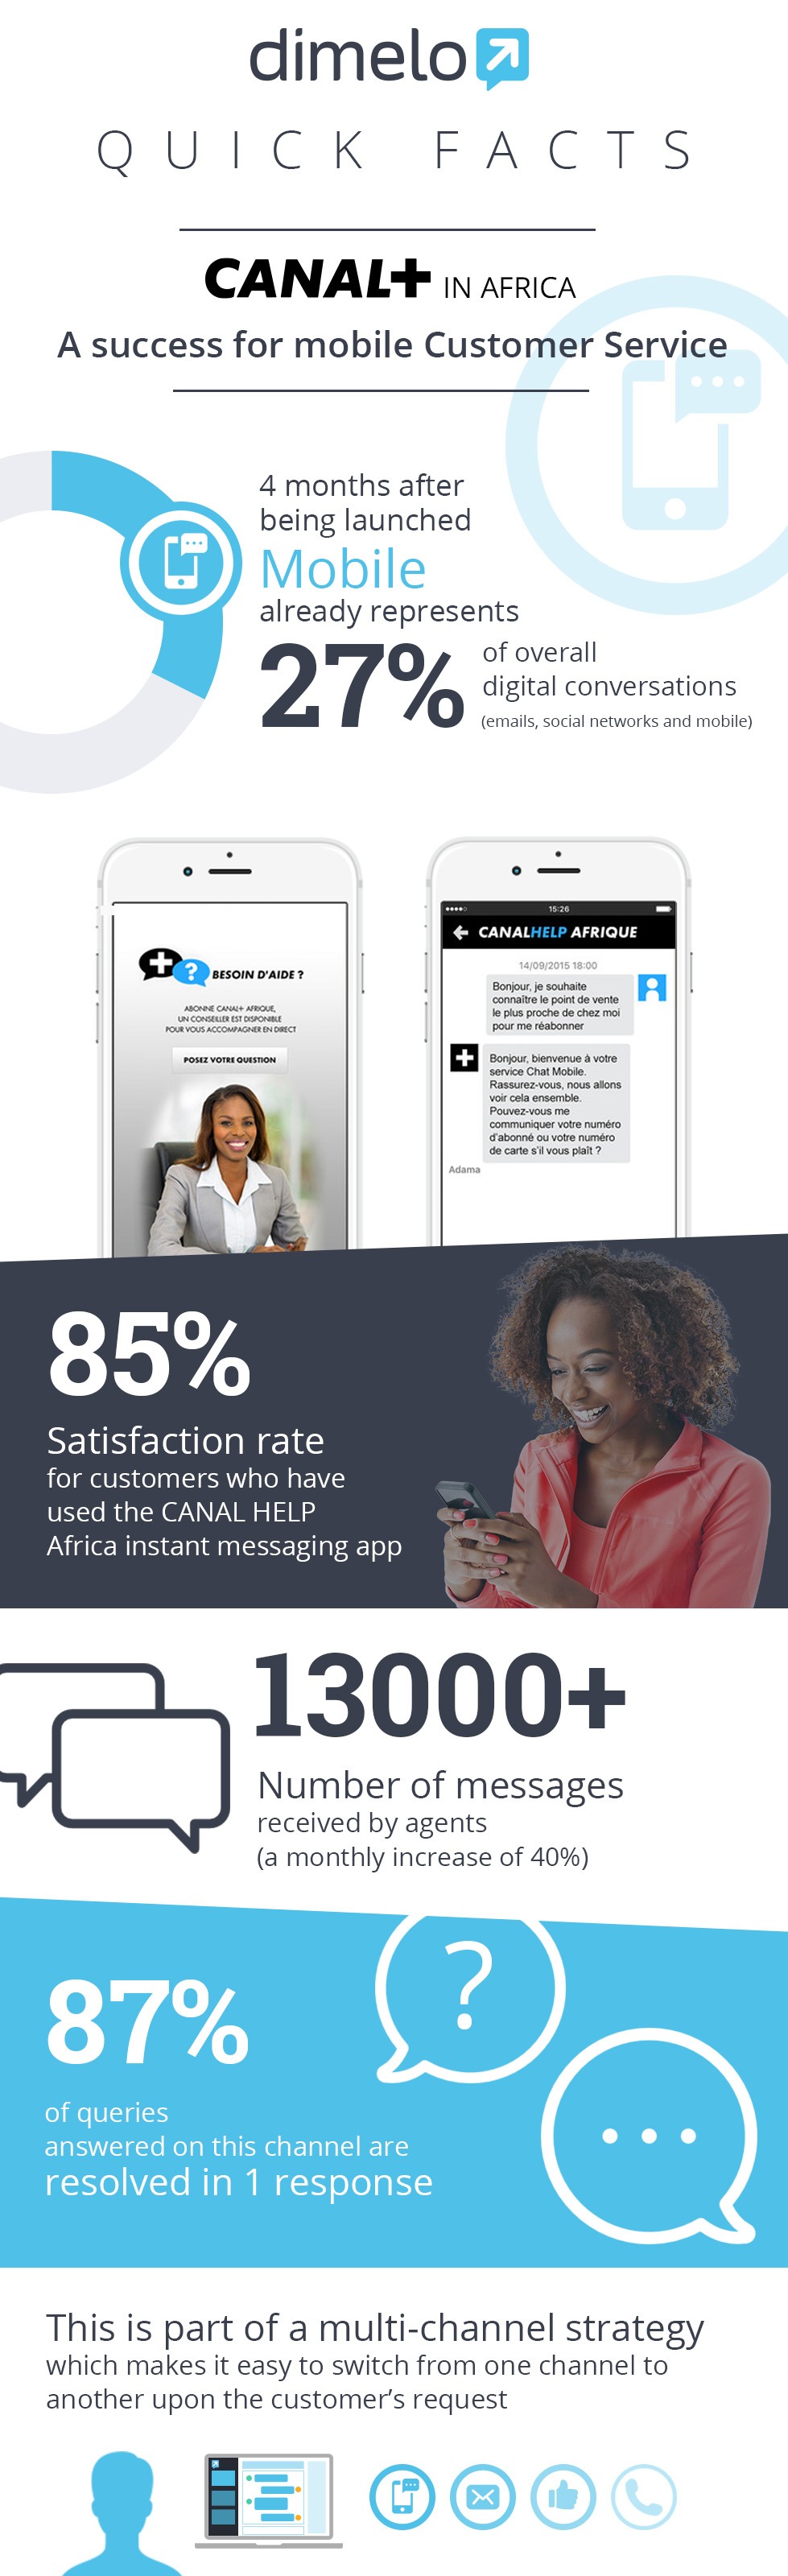 canal + Afrique success service client mobile